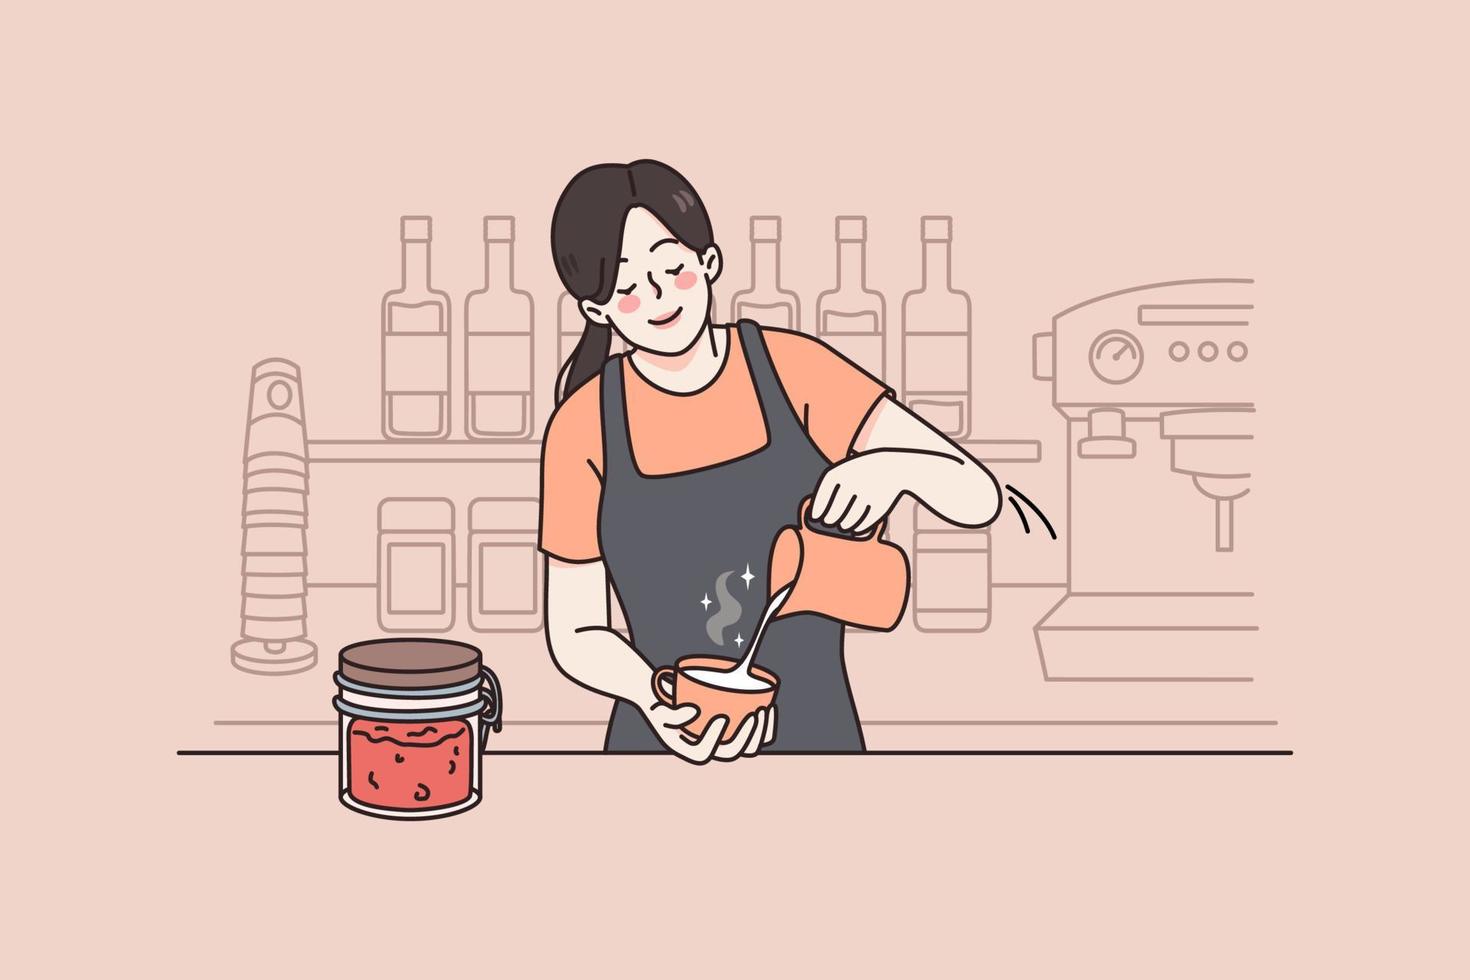 werken net zo barista in coffeeshop concept. jong vrouw barista maken cappuccino of latte met melk voor cliënt gedurende werk gevoel positief vector illustratie